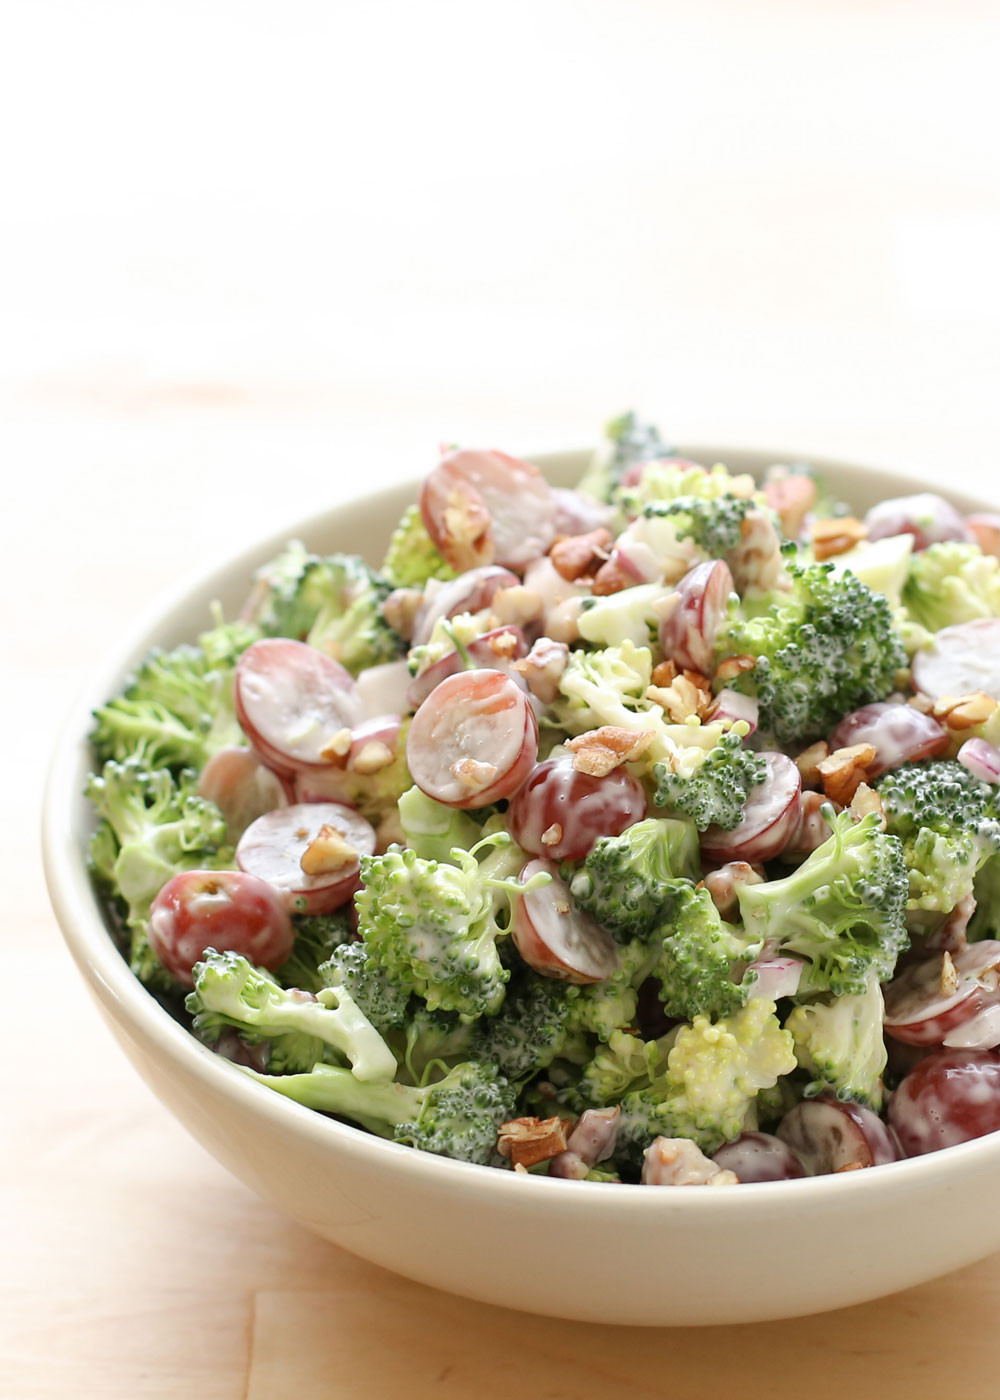 Broccoli Salad With Grapes
 Top 10 Broccoli Salad Recipes RecipePorn